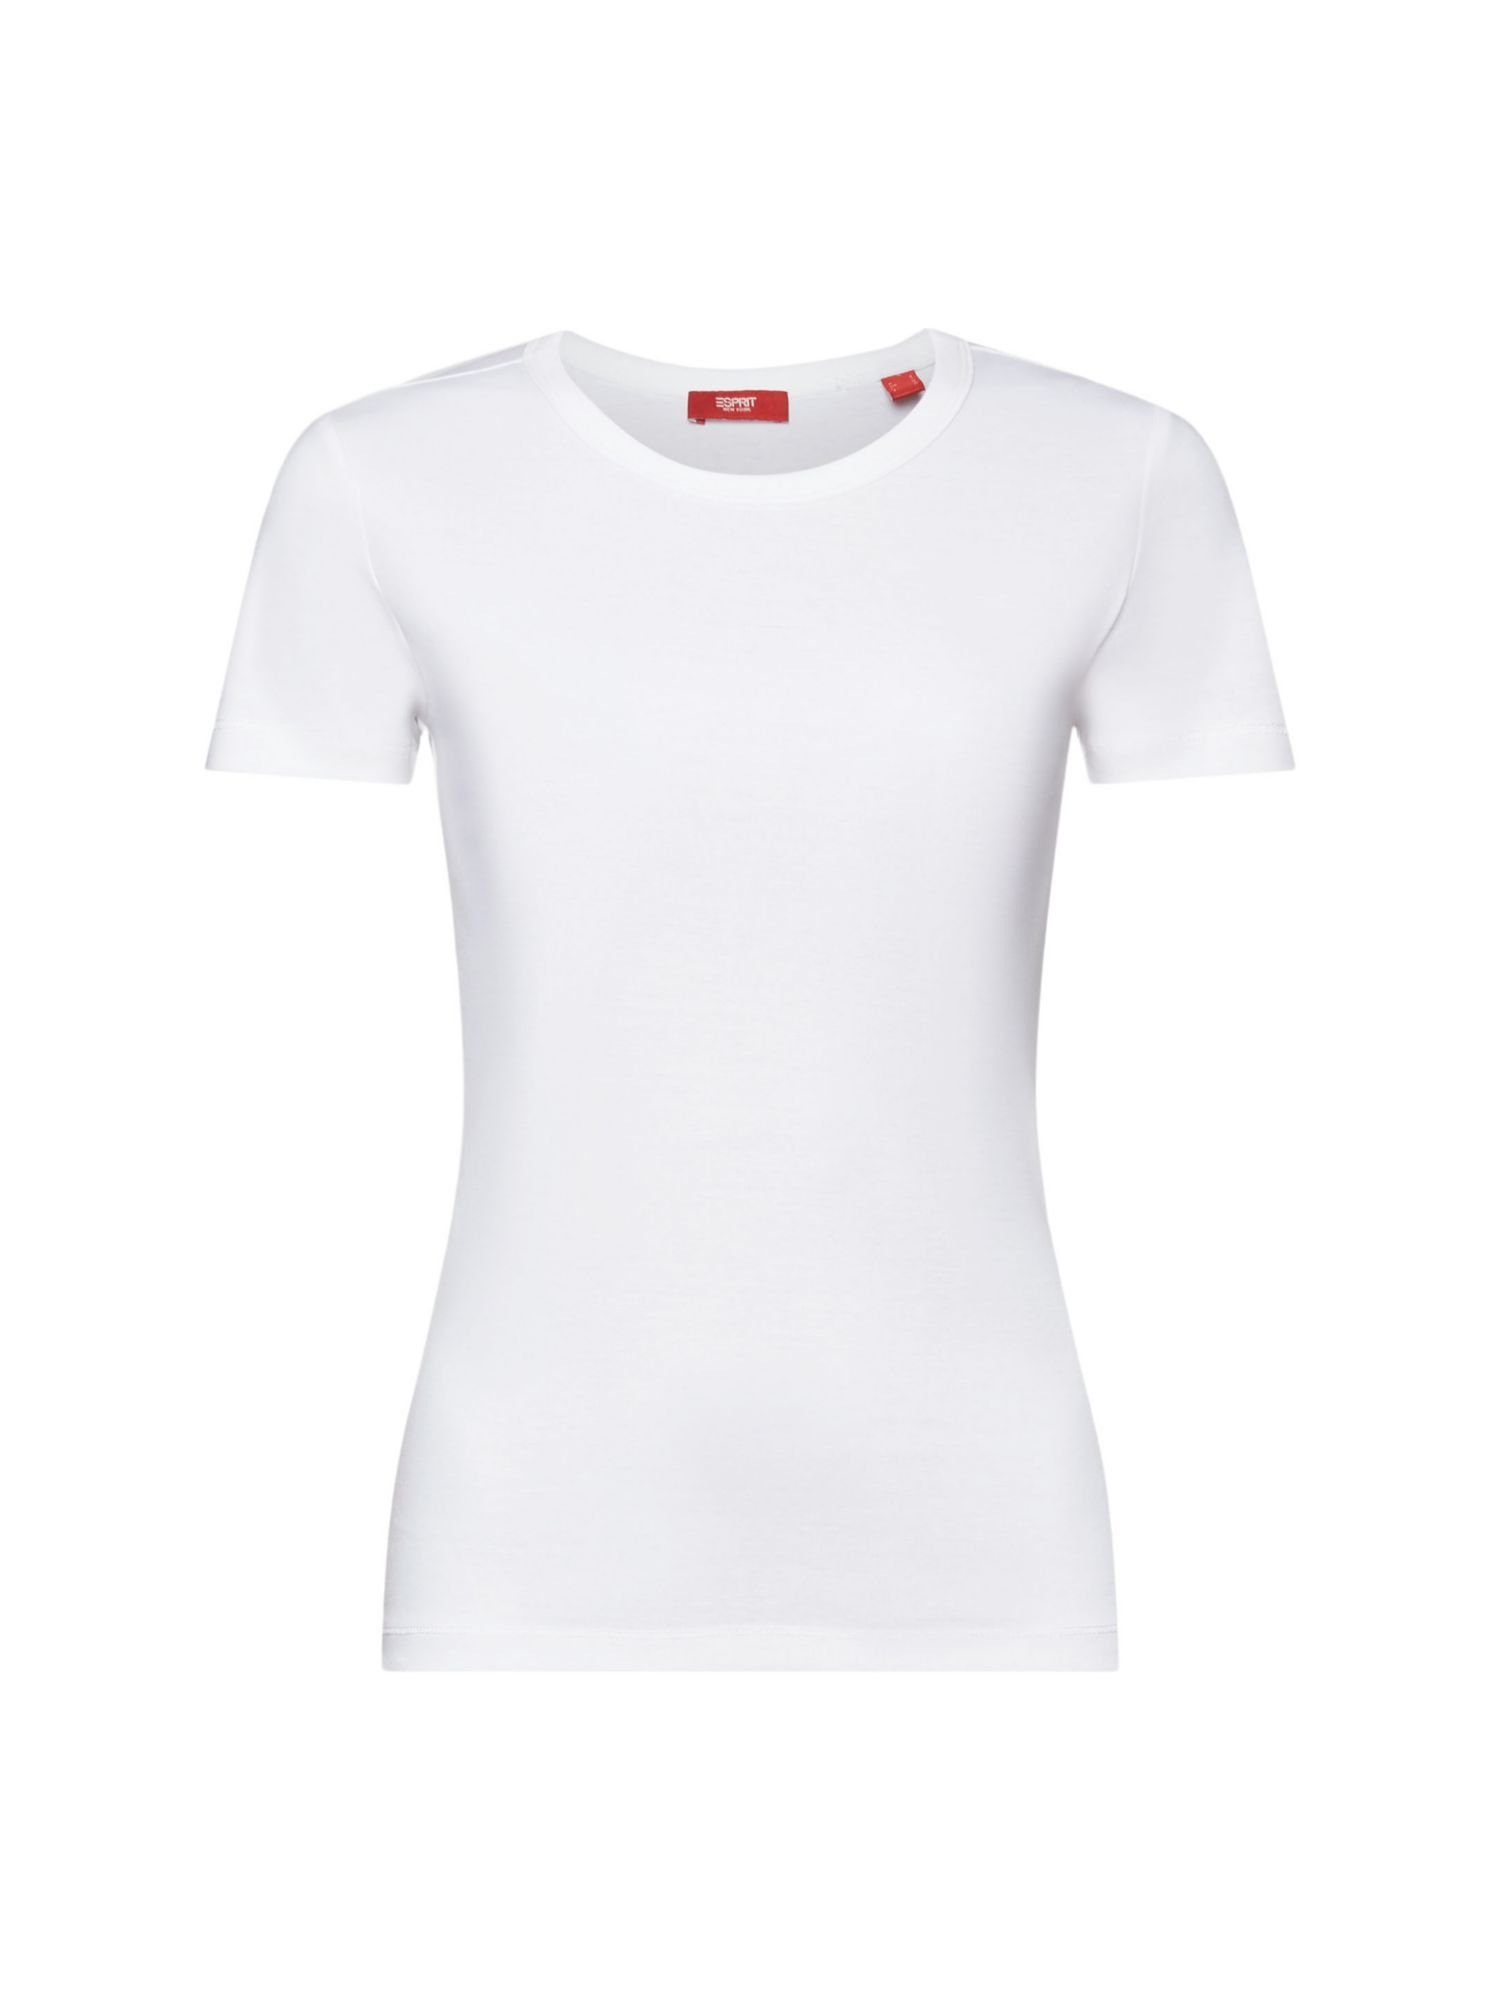 Esprit Shirts für Damen online kaufen | OTTO